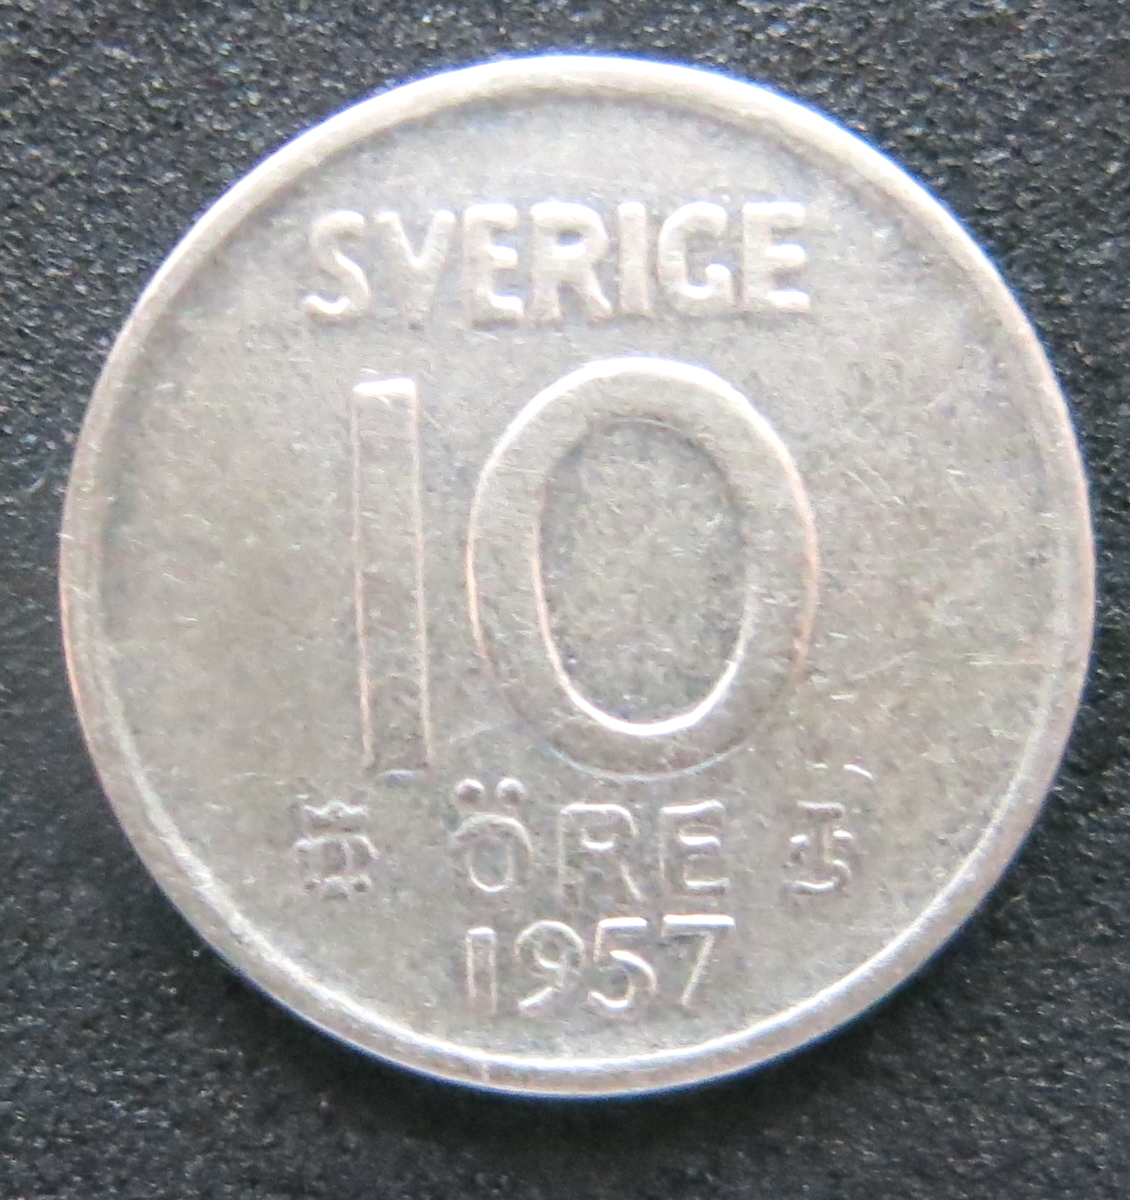 スウェーデン 10オーレ銀貨 1957年 の画像1